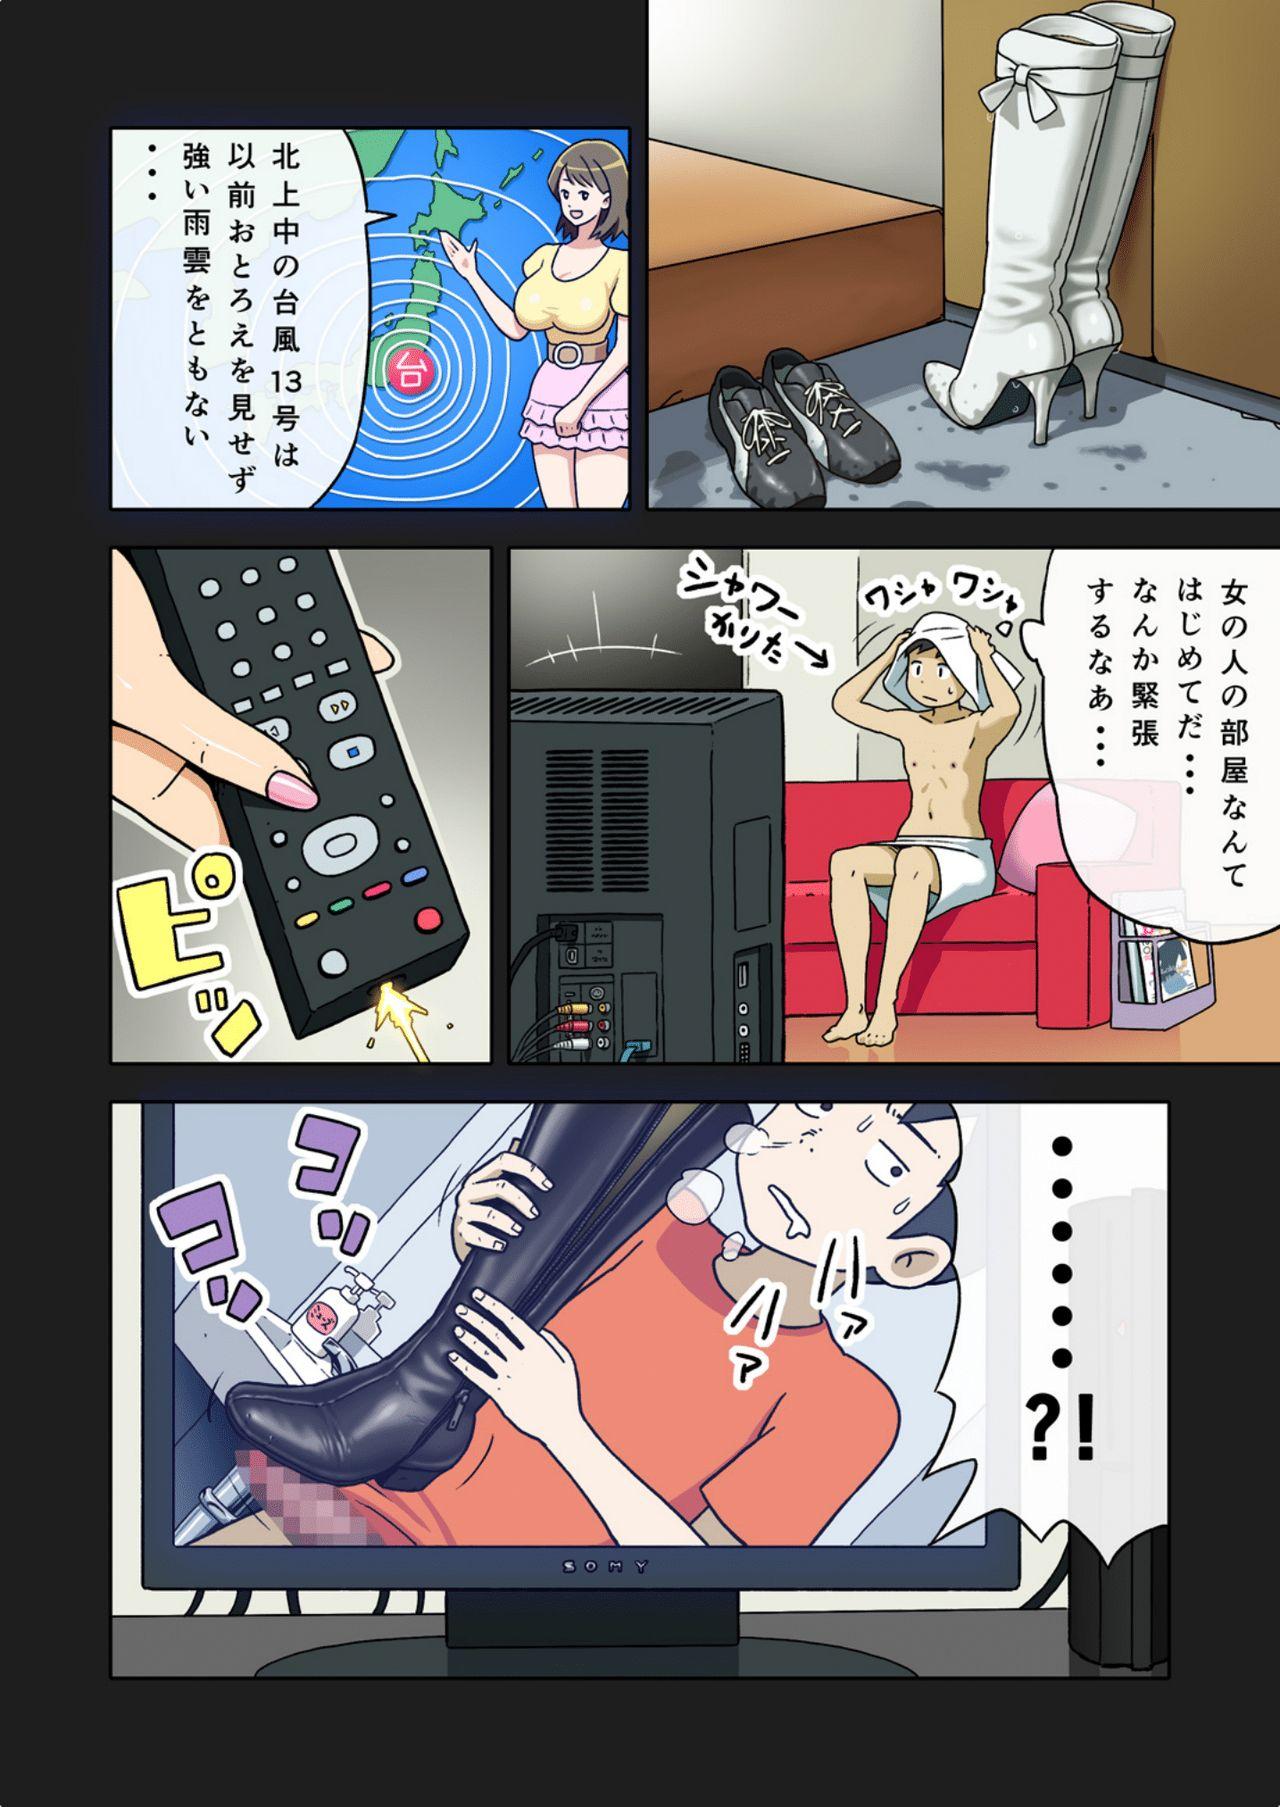 [Enka Boots] Enka Boots no Manga 1 - Juku no Sensei ga Joou-sama V4.0 8